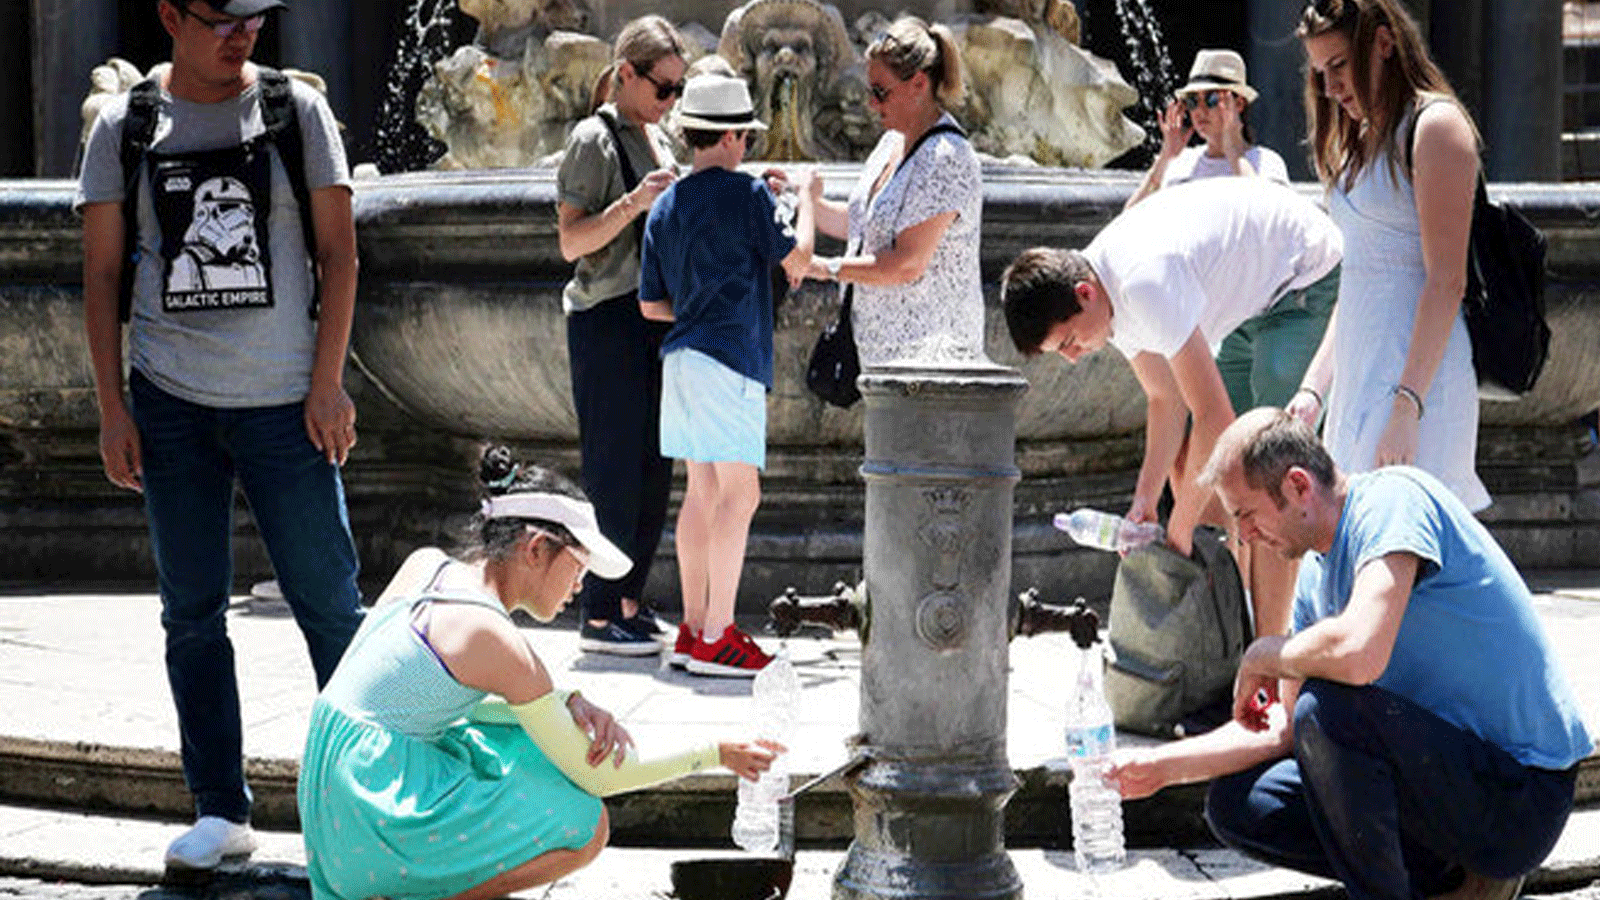  السائحون يملؤون زجاجاتهم من نافورة عامة لينعشوا أنفسهم خلال موجة حارة صيفية غير معتادة في 24 حزيران\يونيو 2019 في روما.